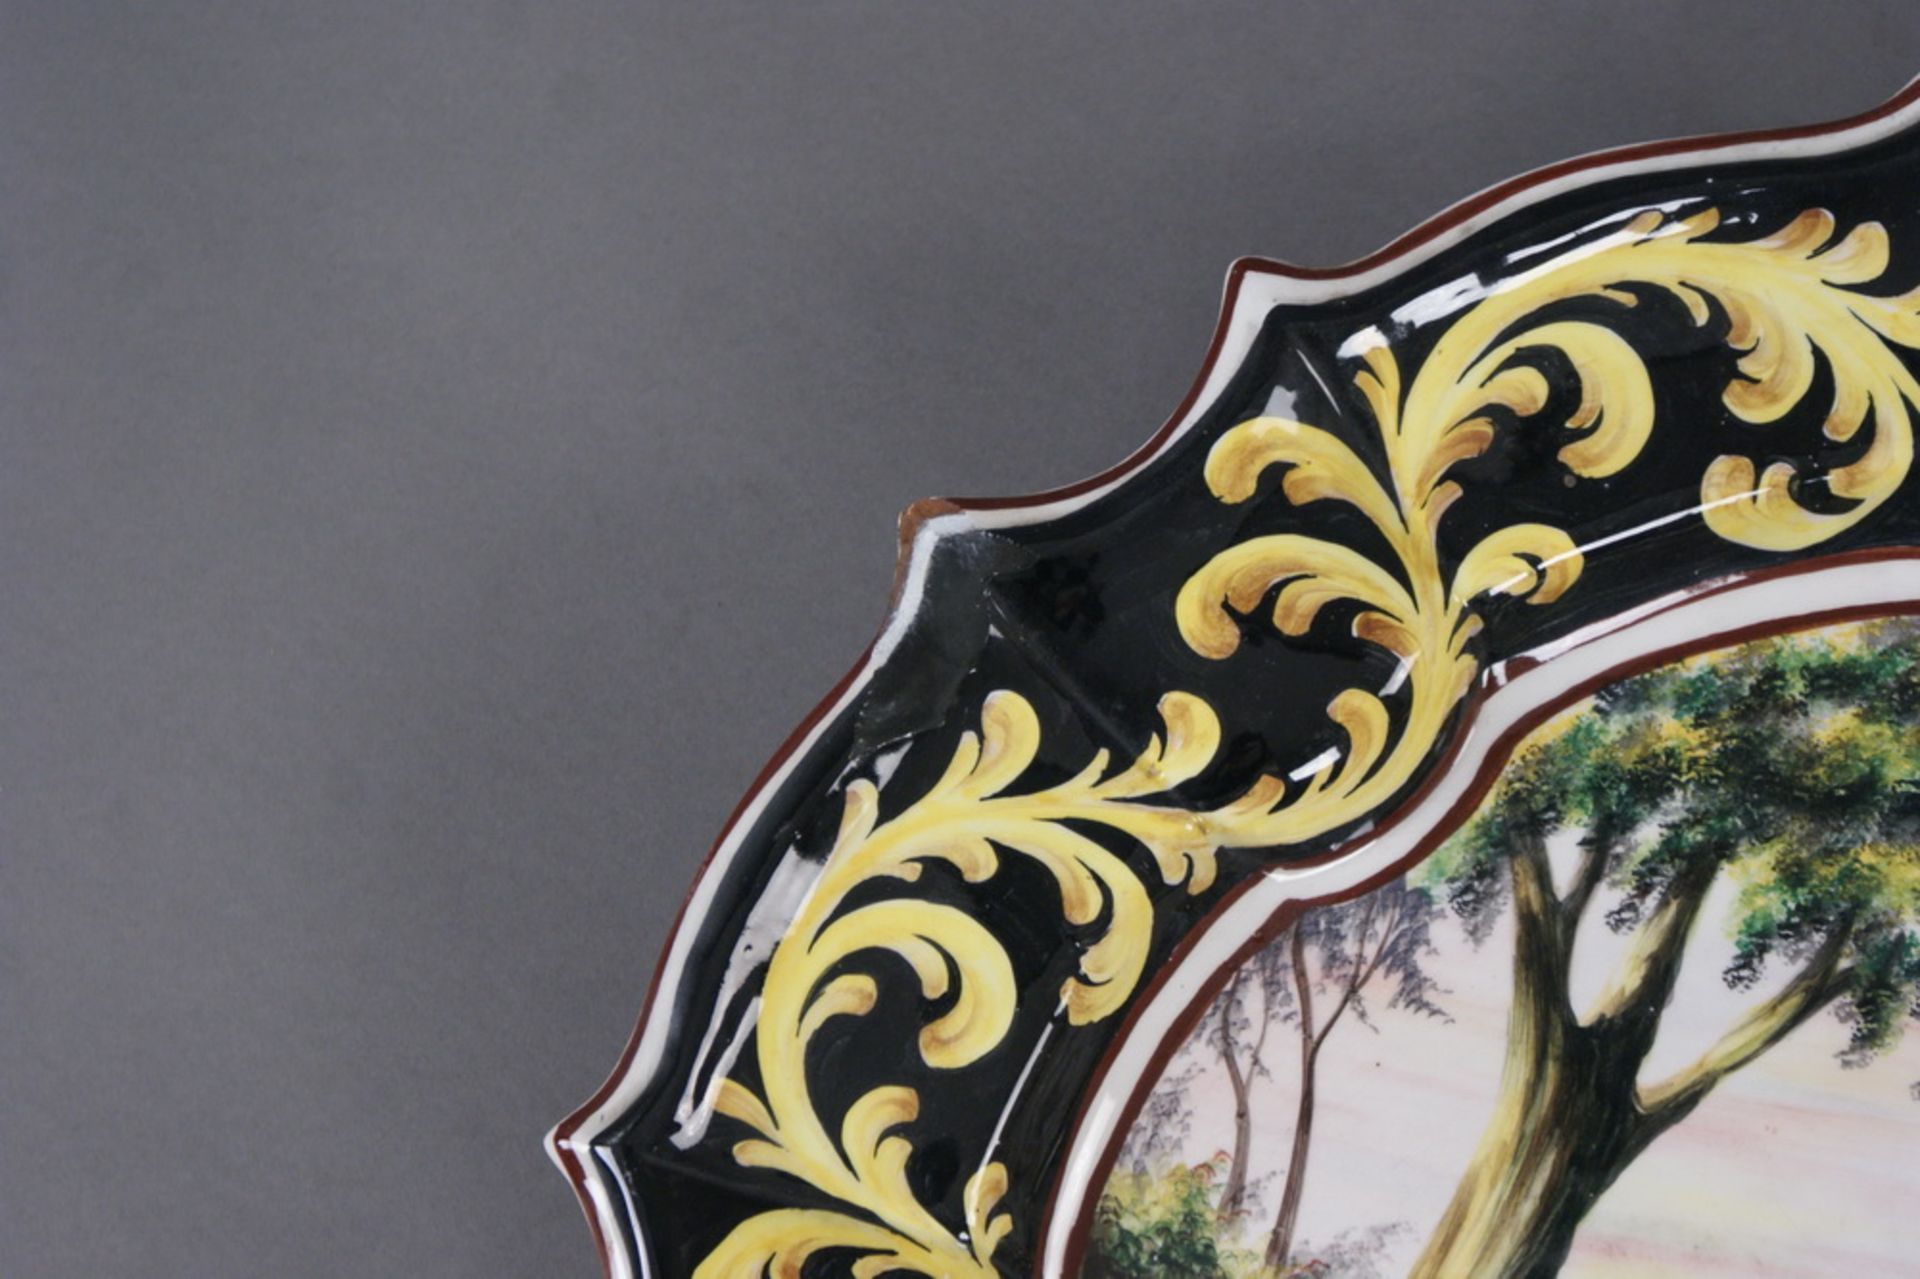 GROSSER SCHAUTELLER Keramik, bunt glasiert, Rückseitig bezeichnet, Durchmesser 57 cm - Bild 5 aus 6